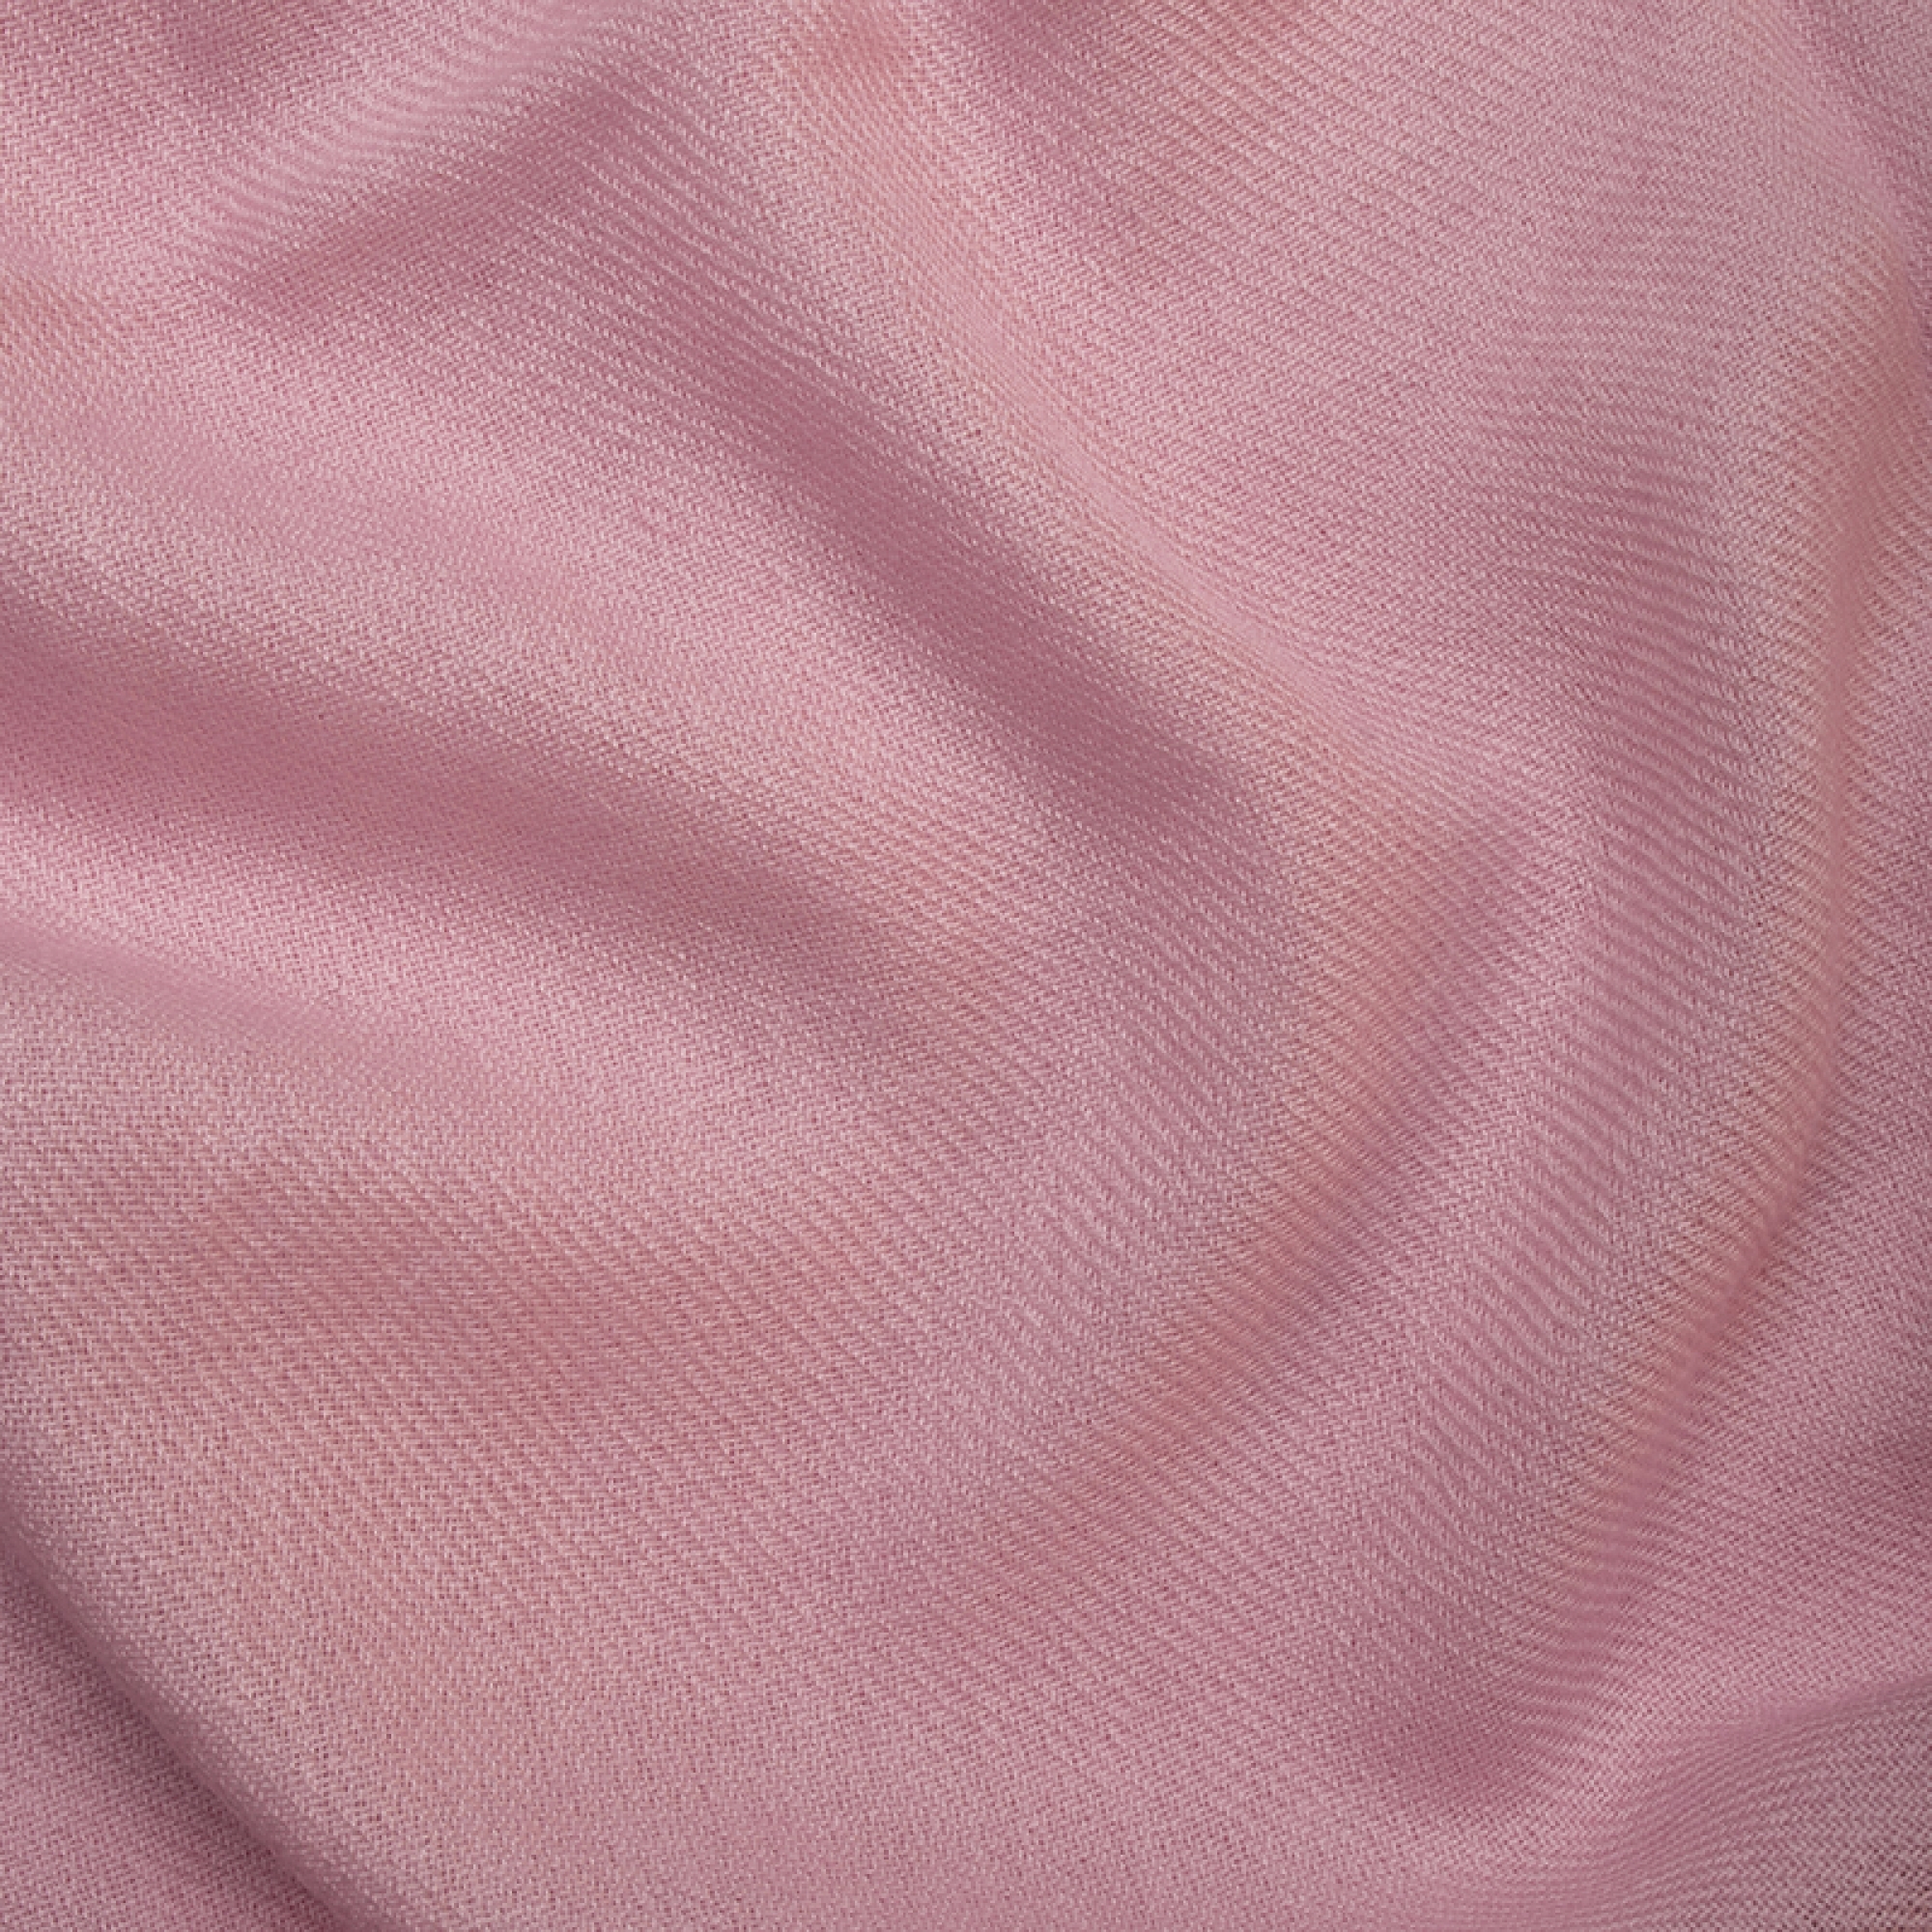 Cachemire accessoires couvertures plaids toodoo plain m 180 x 220 rose pale 180 x 220 cm